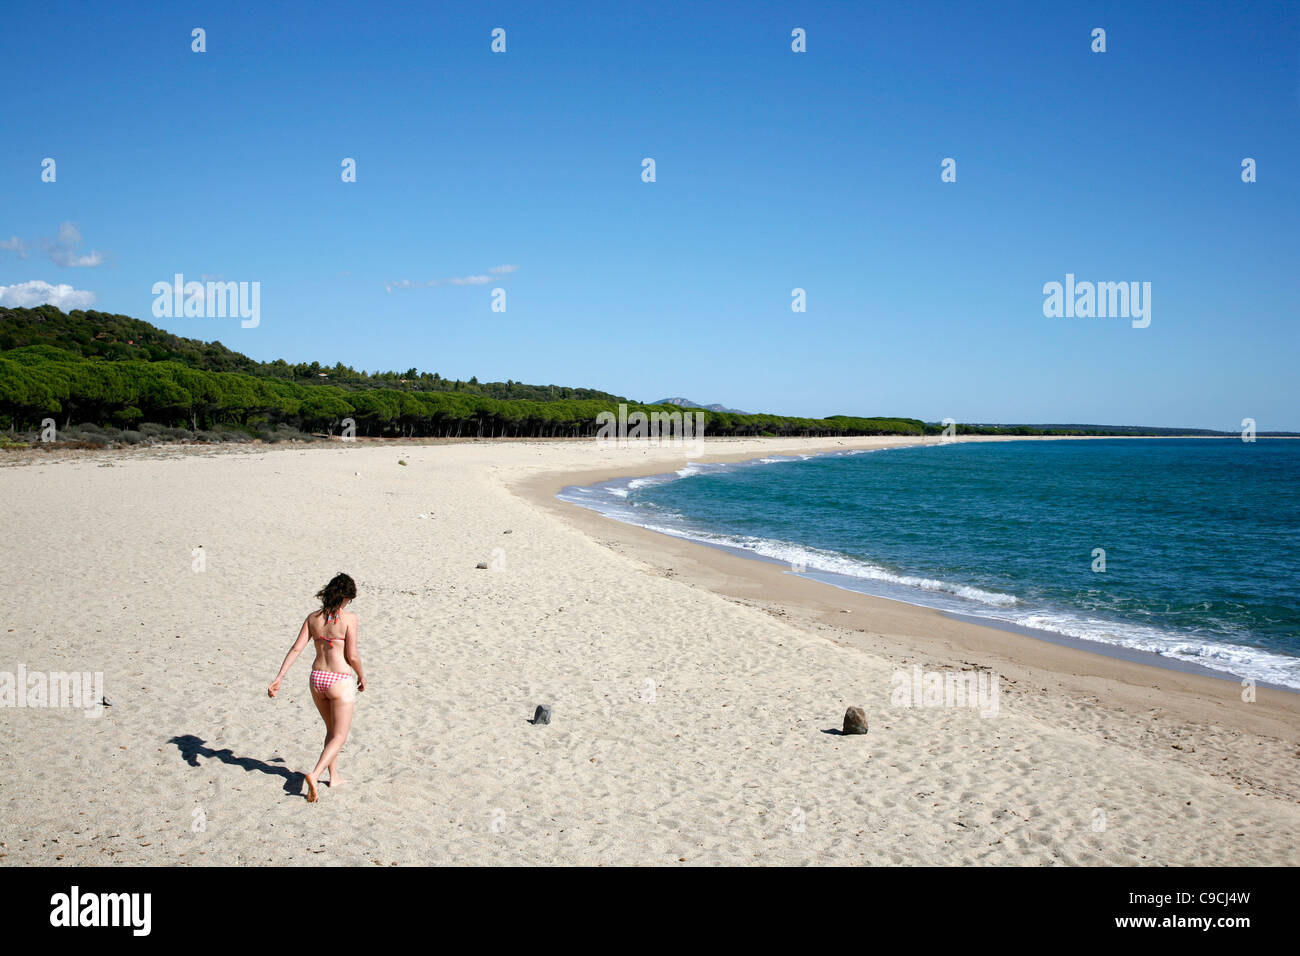 Orosei beach in the Orosei Bay, Sardinia, Italy. Stock Photo